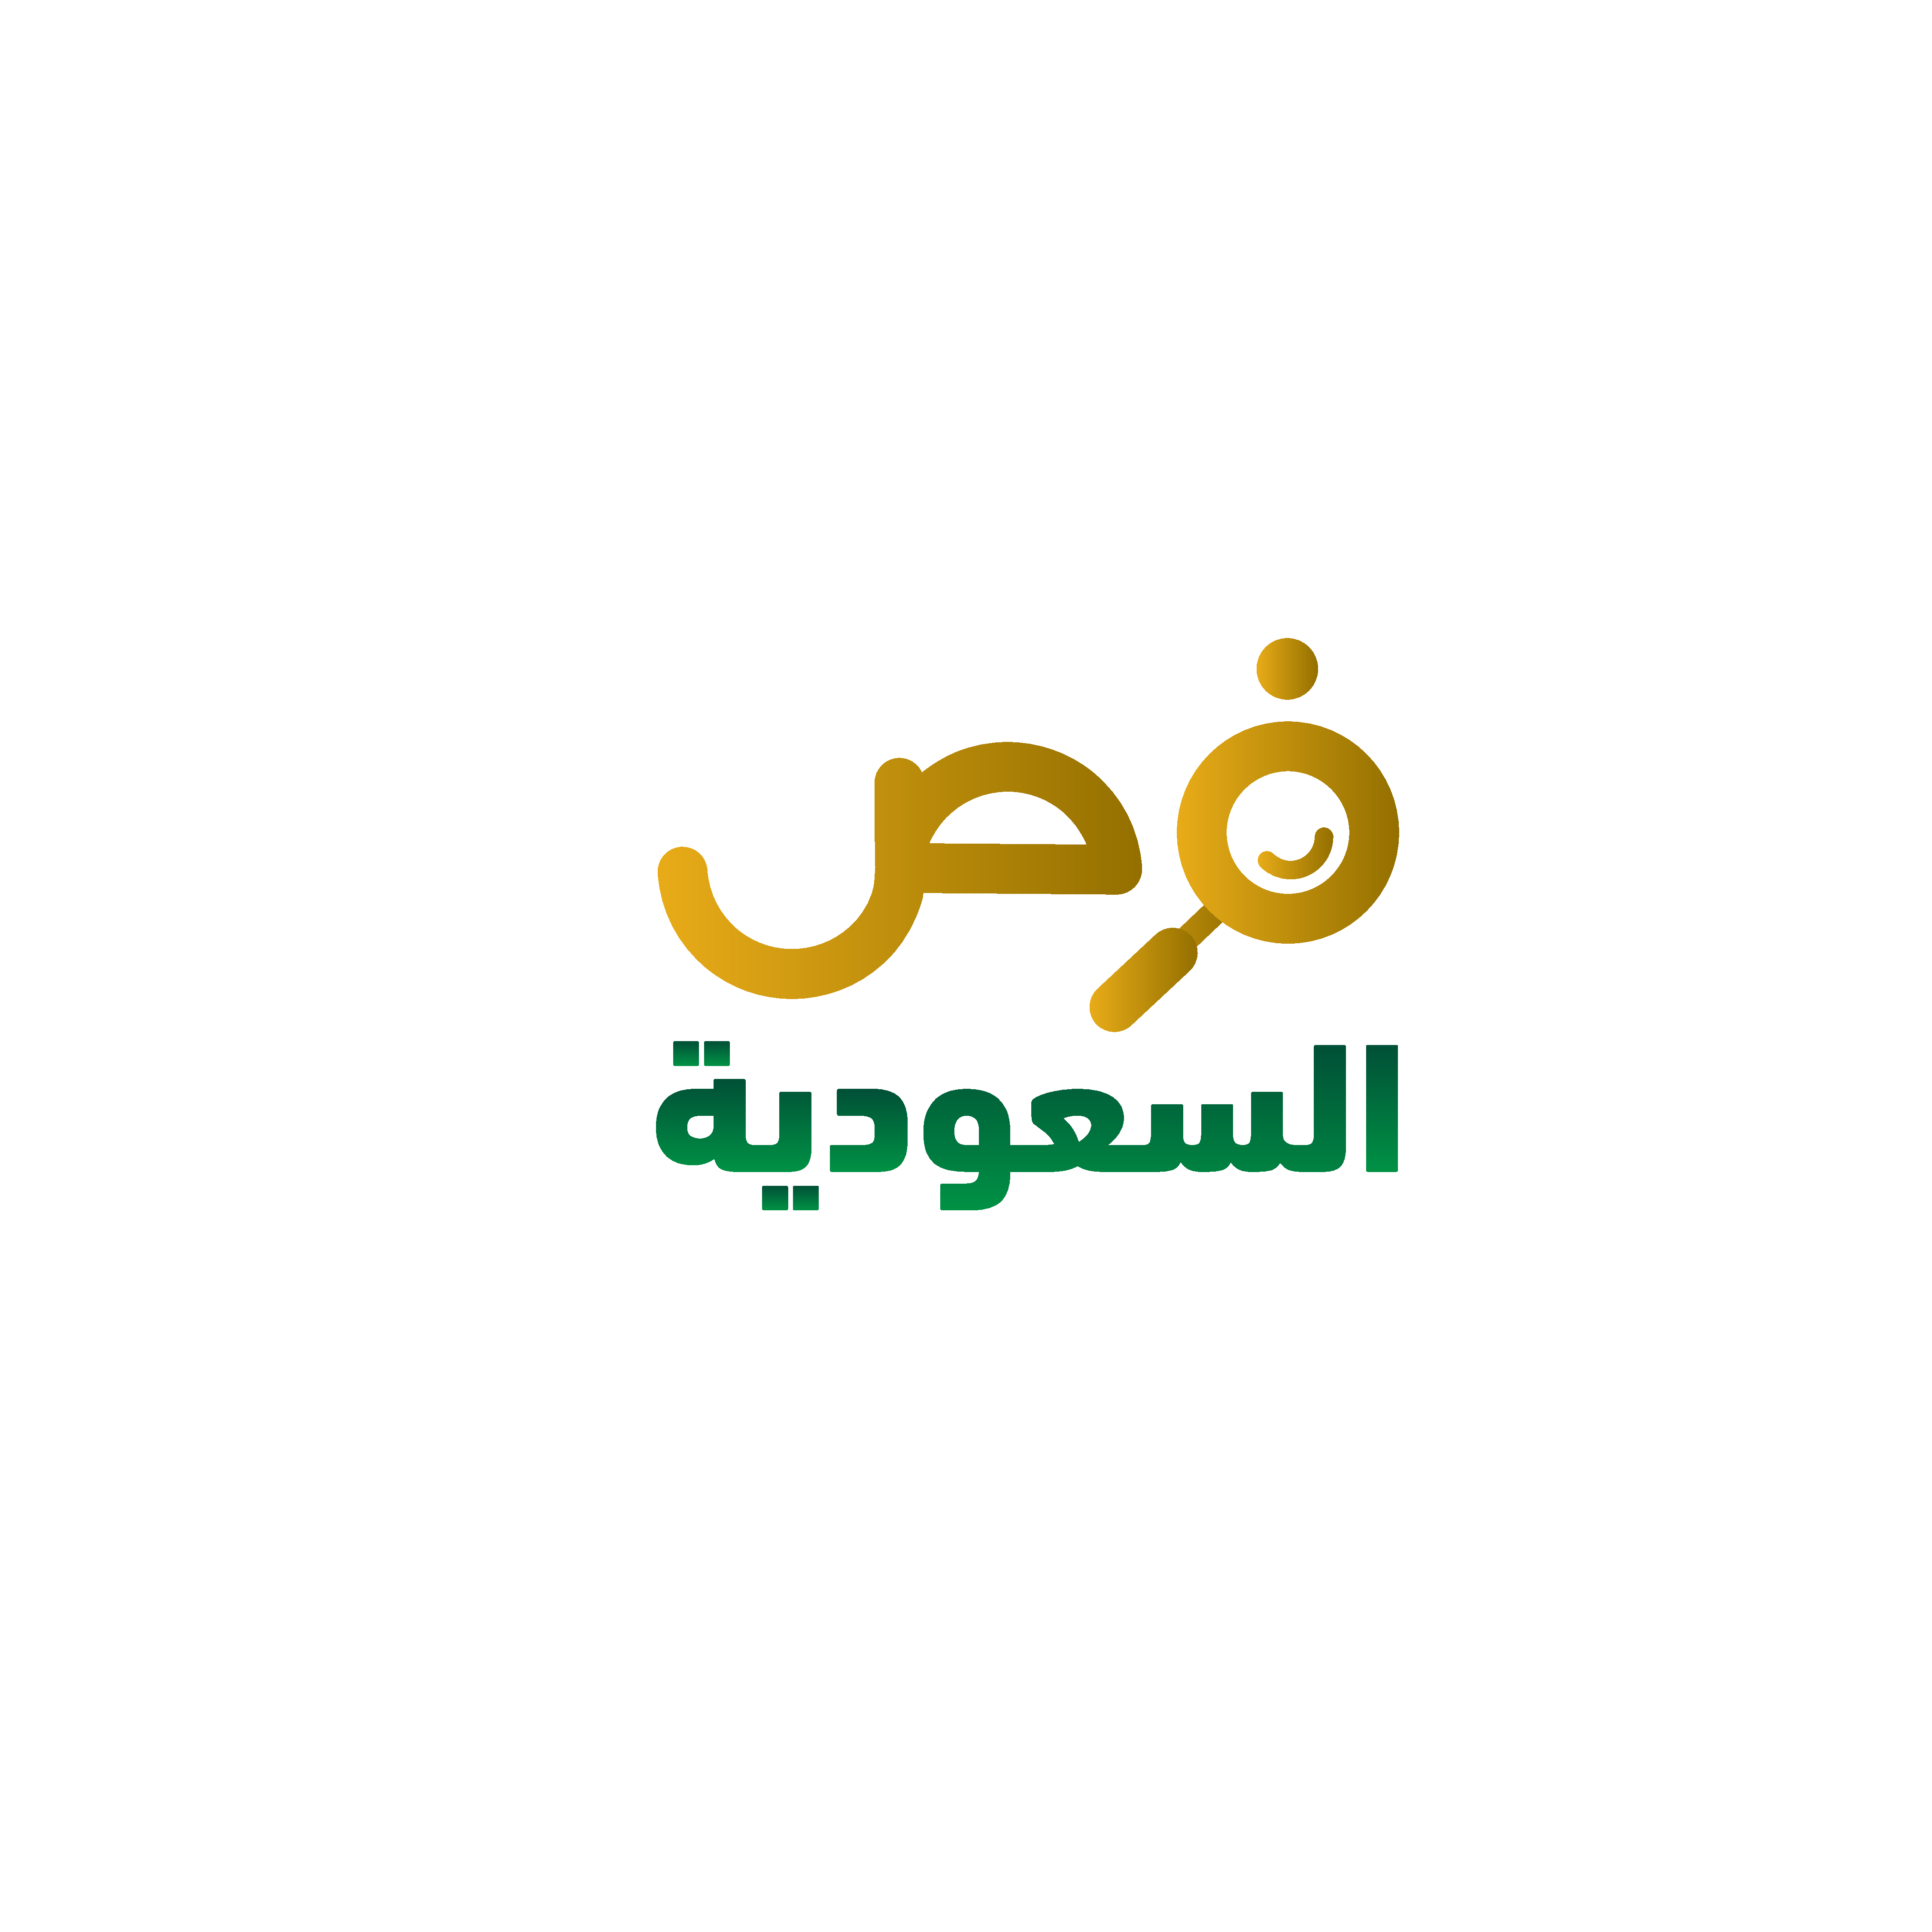 فرص عمل في السعودية أولاً بأول إعلانات وظائف المملكة العربية السعودية